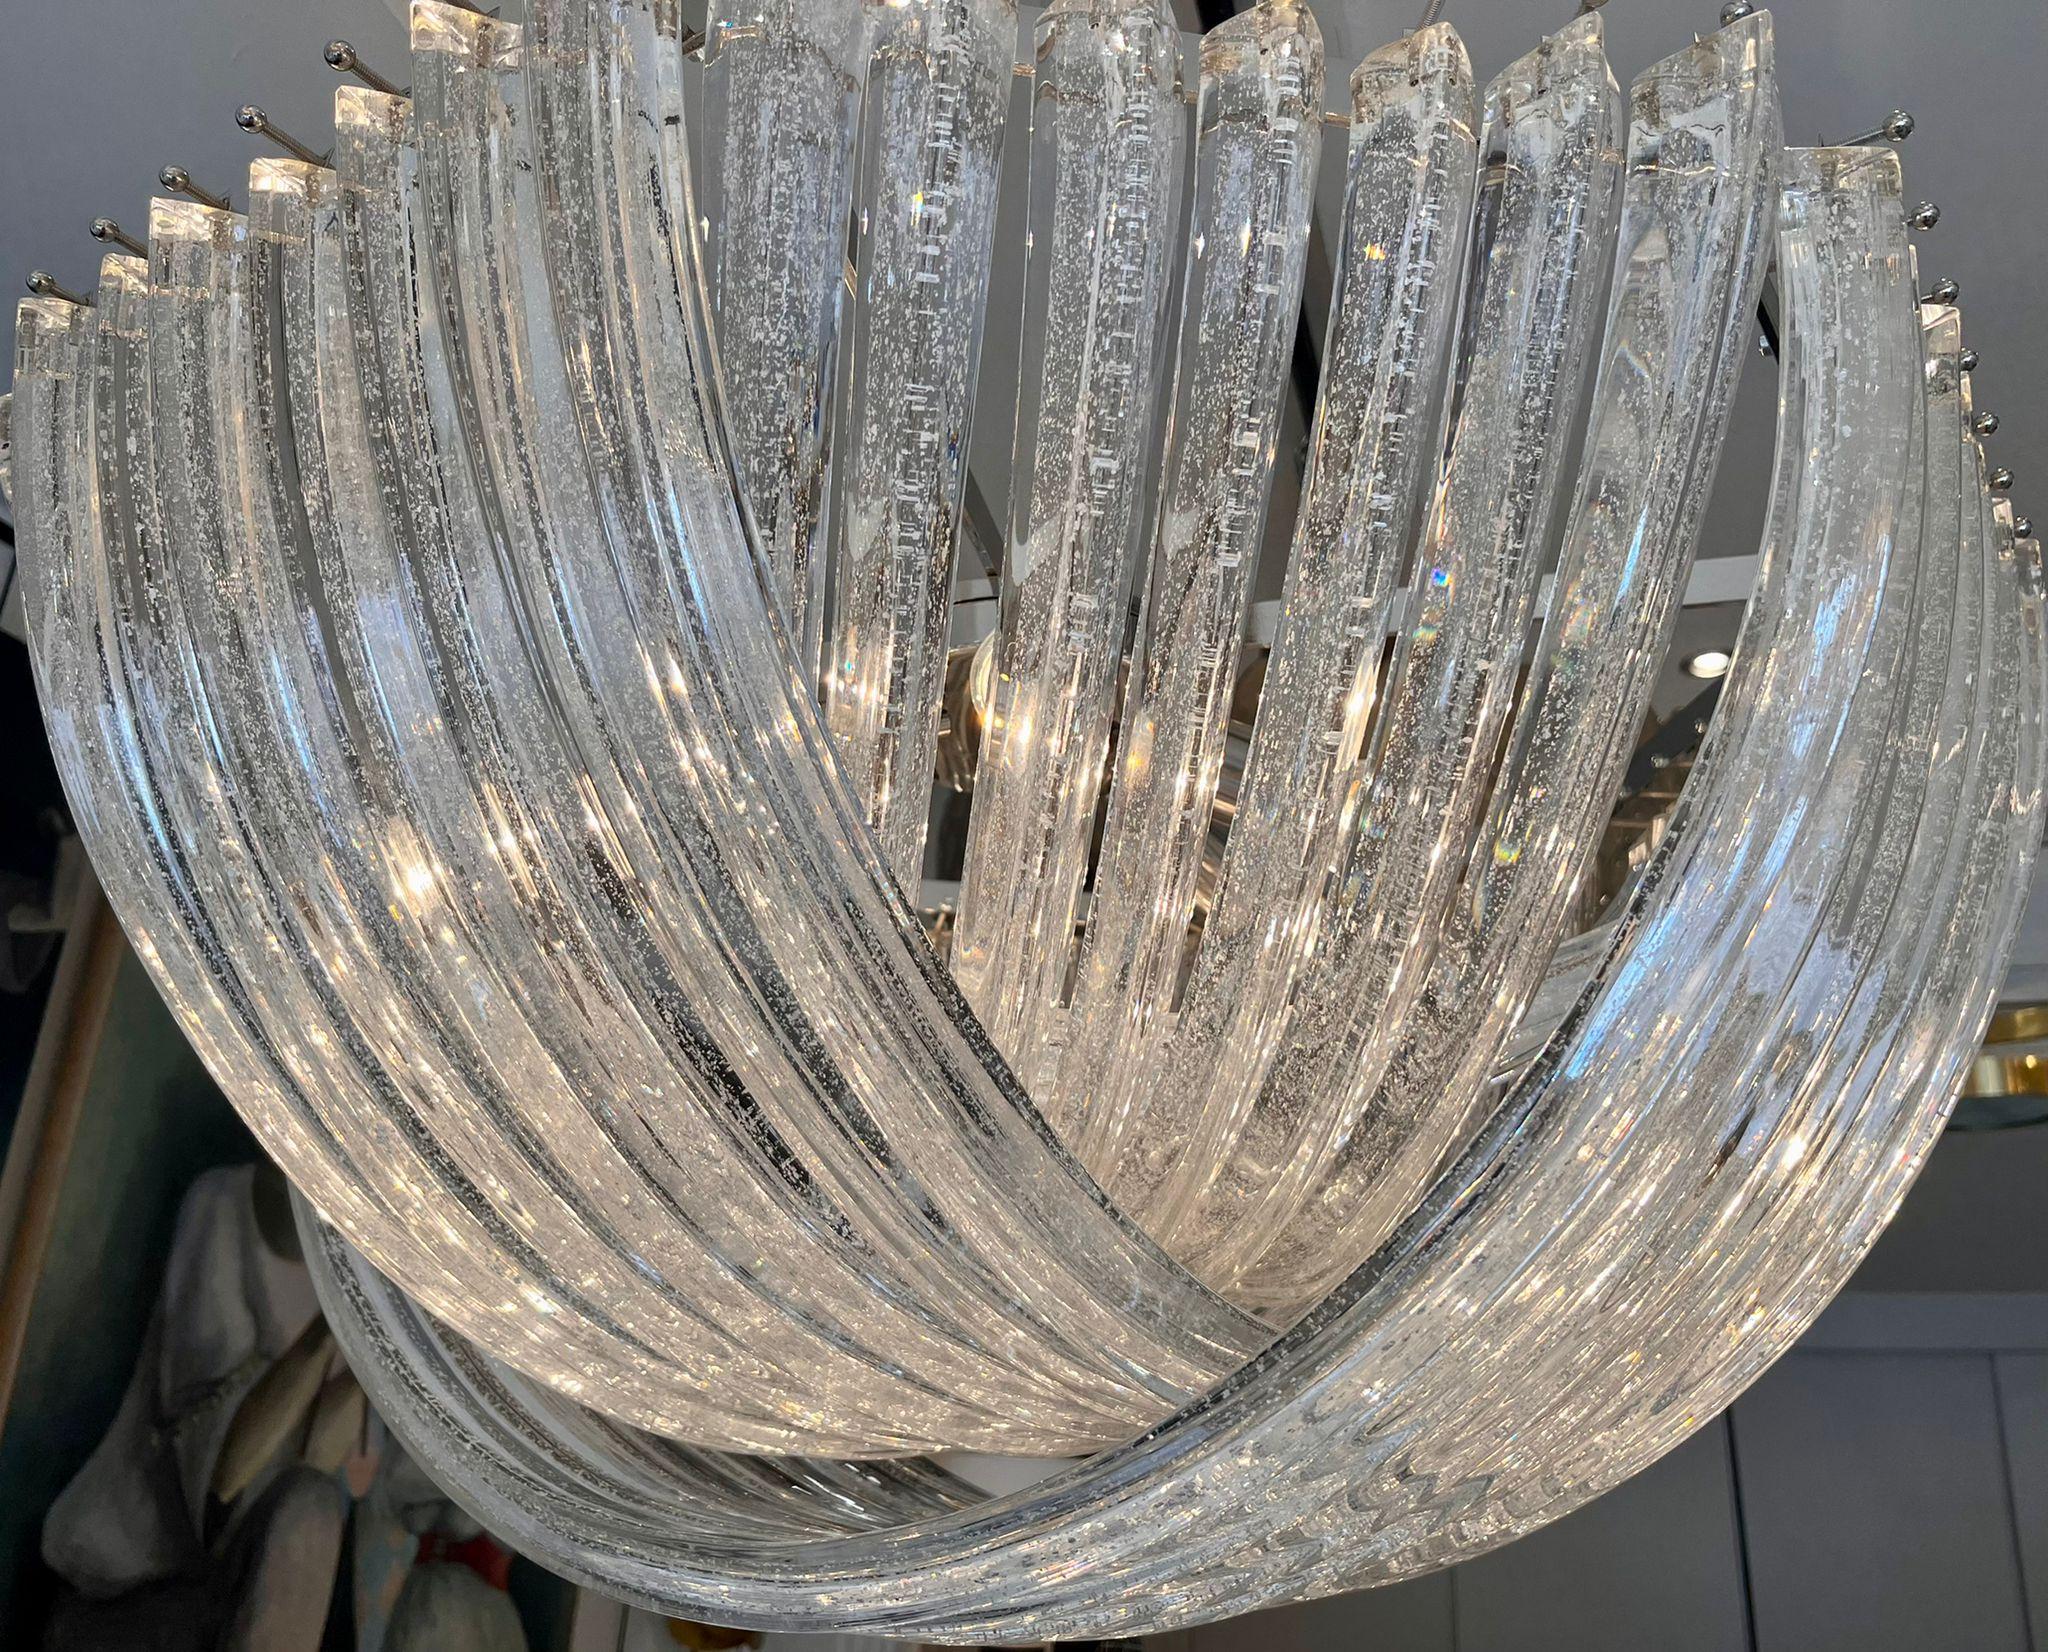 Murano mundgeblasenen funkelnden (Silber glitzert) klaren Kristallglas-Kronleuchter.

Halterung aus verchromtem Stahl.
Maße: Durchmesser 80 cm
Sechs E27/E26-Glühbirnen (verkabelt für Europa oder USA)
Maße: Die Höhe (40 cm) gilt nur für den